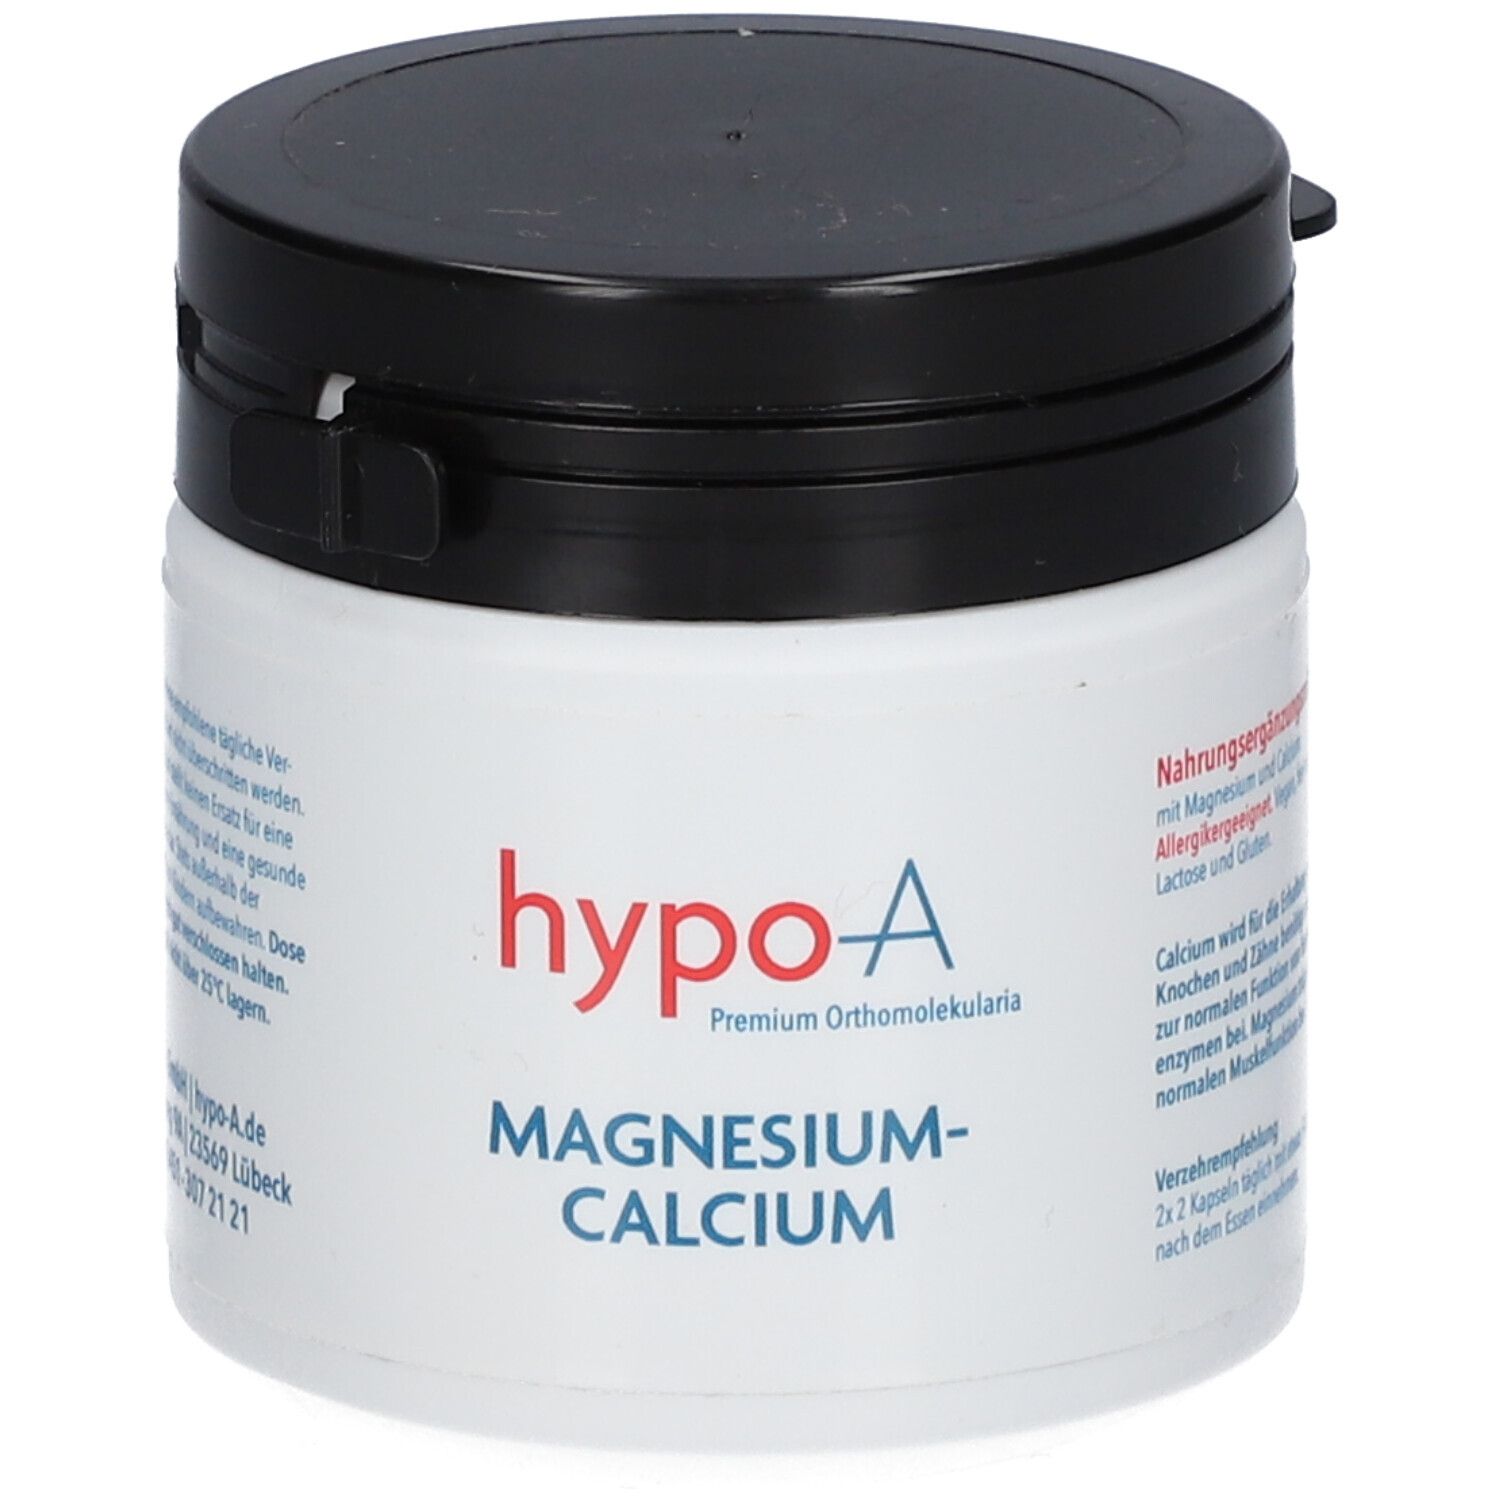 Image of hypo-A Magnesium-Calcium